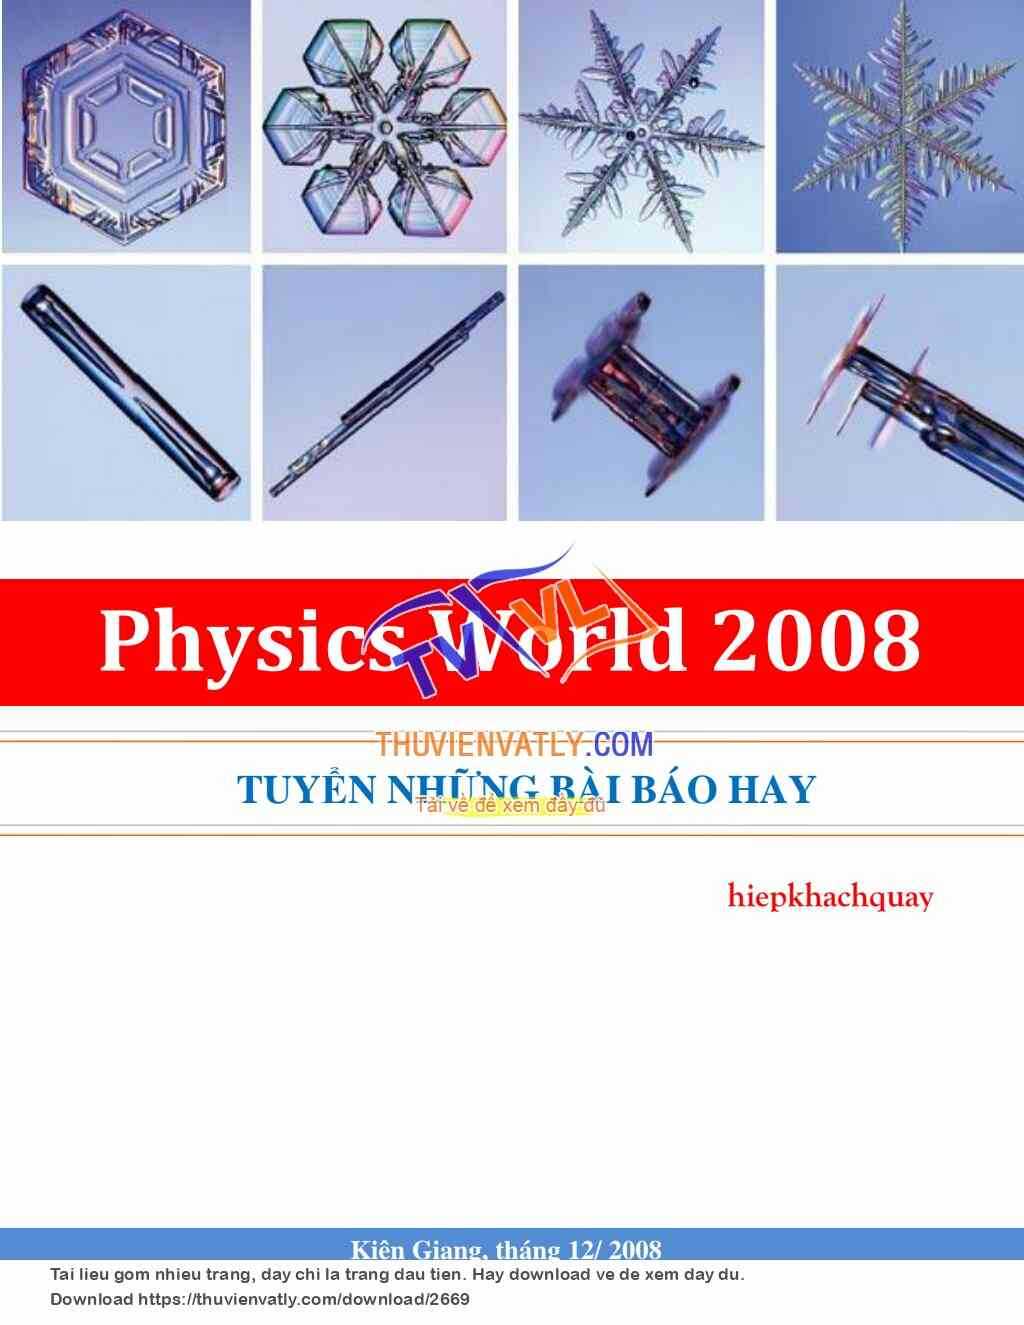 Tuyển các bài báo Physics World năm 2008 (hiepkhachquay)